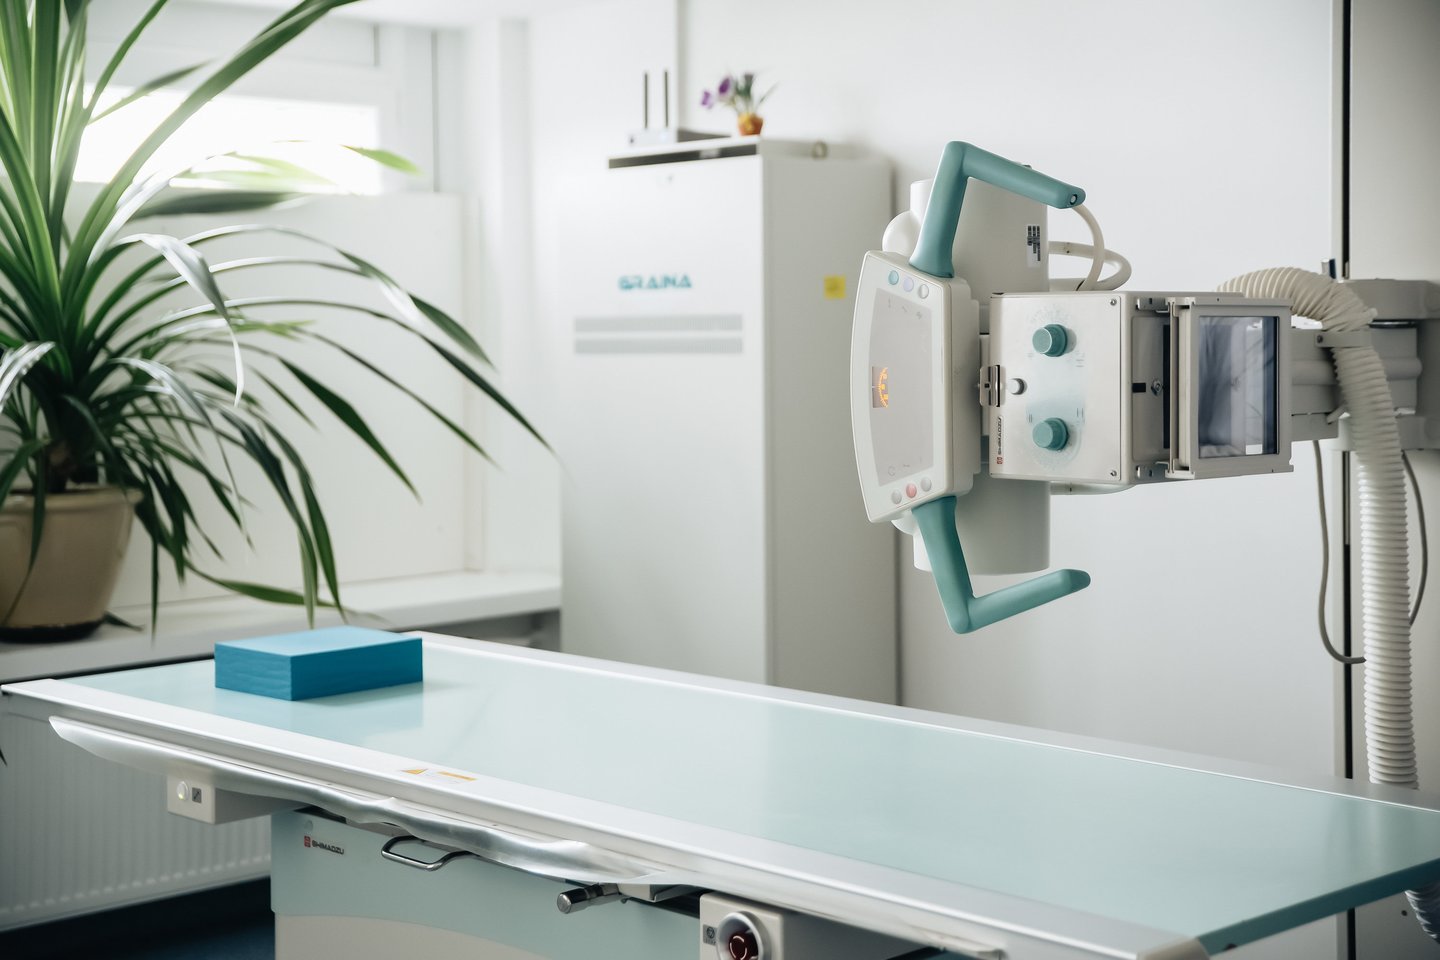 Antakalnio poliklinika informuoja, kad jau pradėjo teikti radiologinės diagnostikos paslaugas karščiuojantiems pacientams. <br>Pranešimo spaudai nuotr.